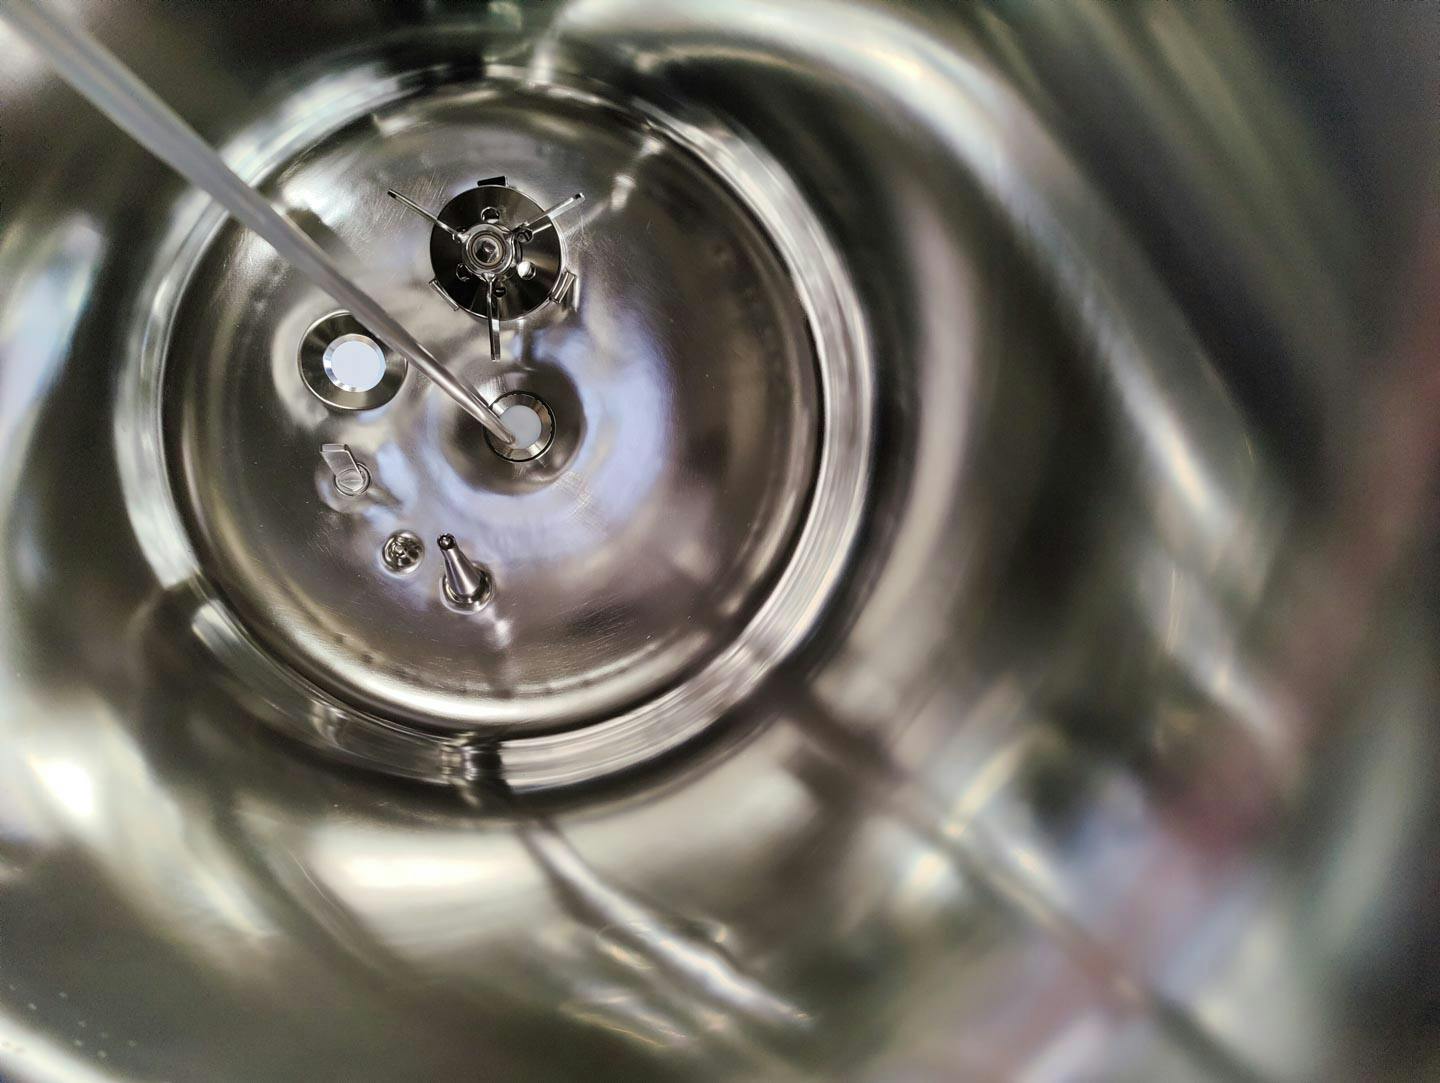 Edelstahl Maurer 130 Ltr. - Mirror-Polished Fraction Collector (Pharma Design) - Реактор из нержавеющей стали - image 9